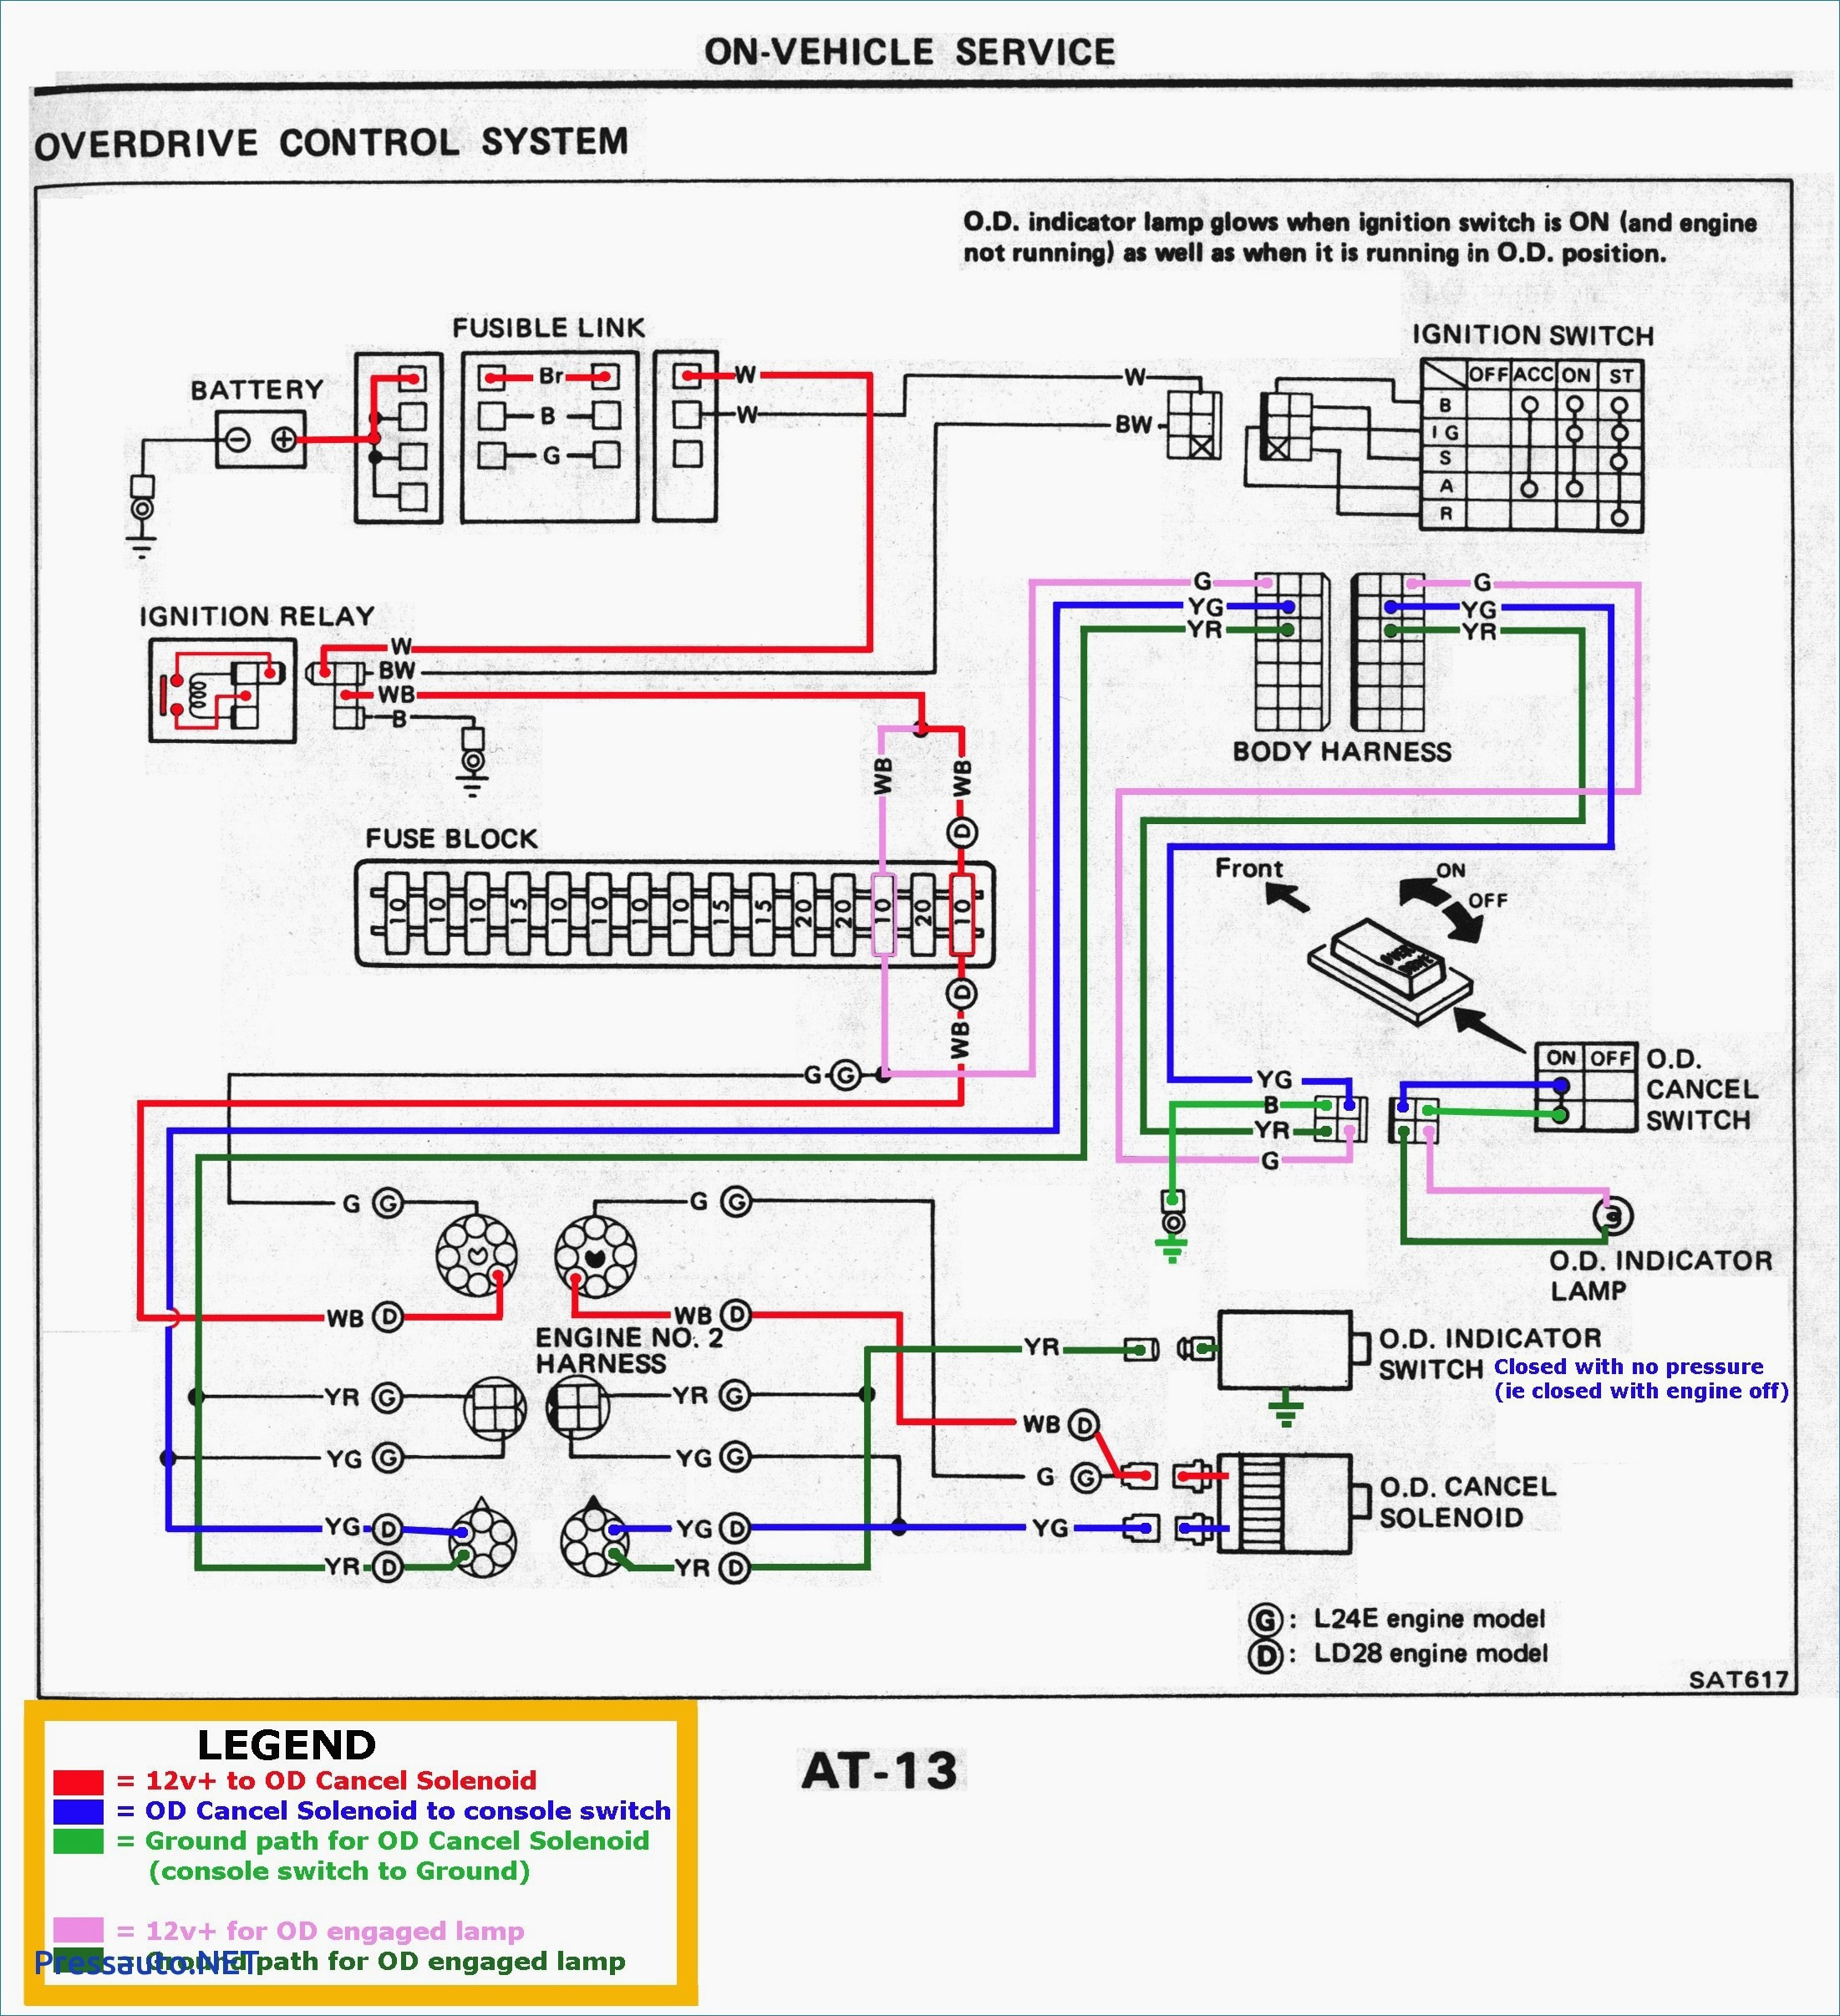 Kenwood Stereo Wiring Diagram Color Code Best Of Wiring Diagram - Kenwood Stereo Wiring Diagram Color Code